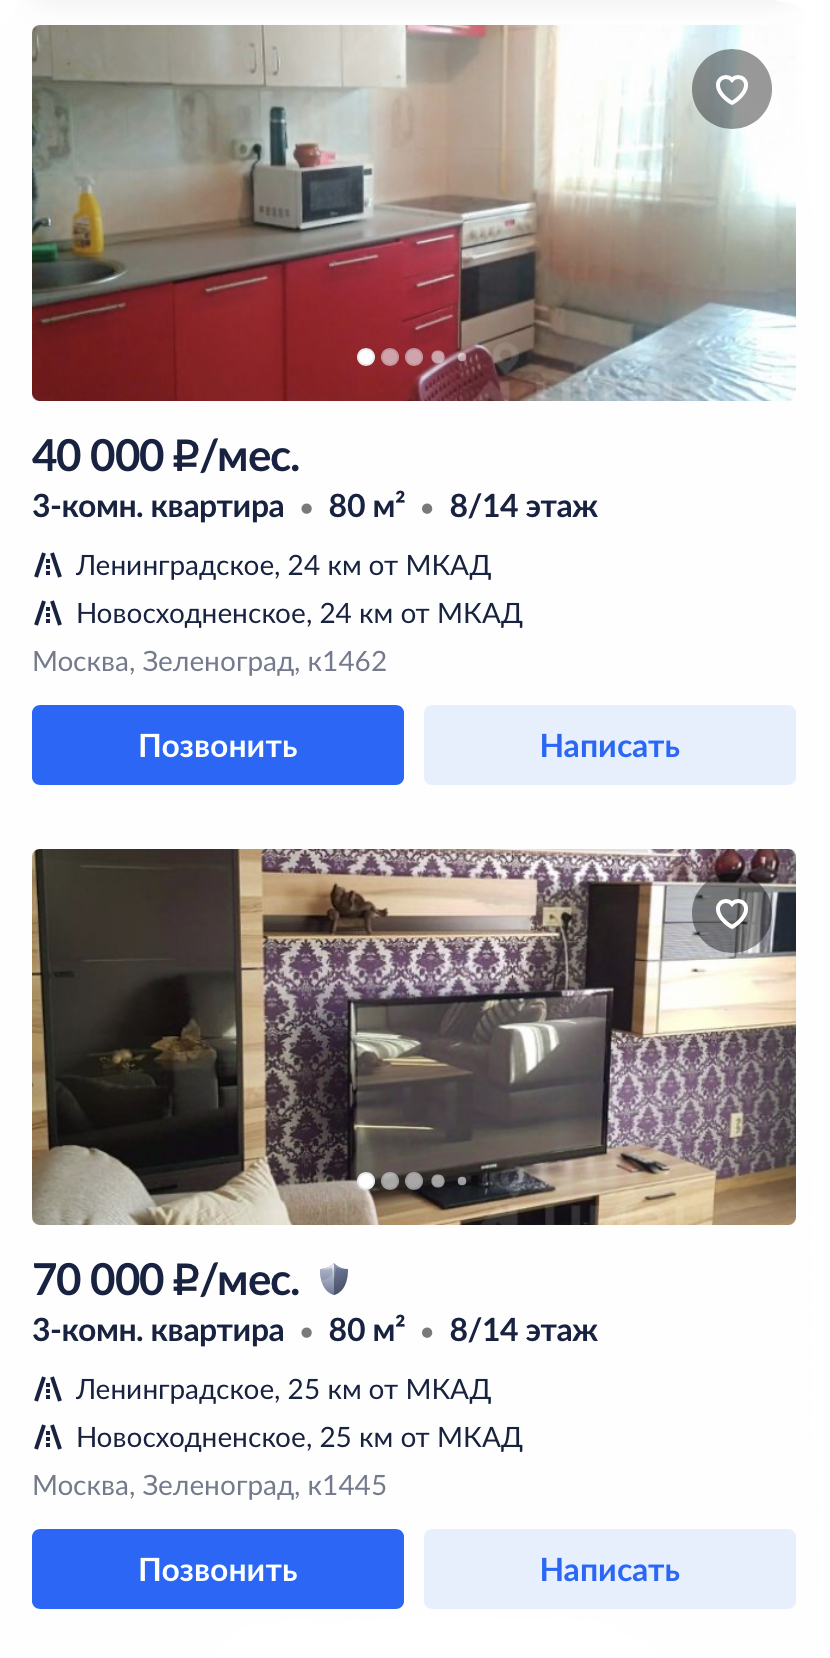 Трехкомнатную квартиру можно снять в пределах 50 000 ₽. Источник: cian.ru